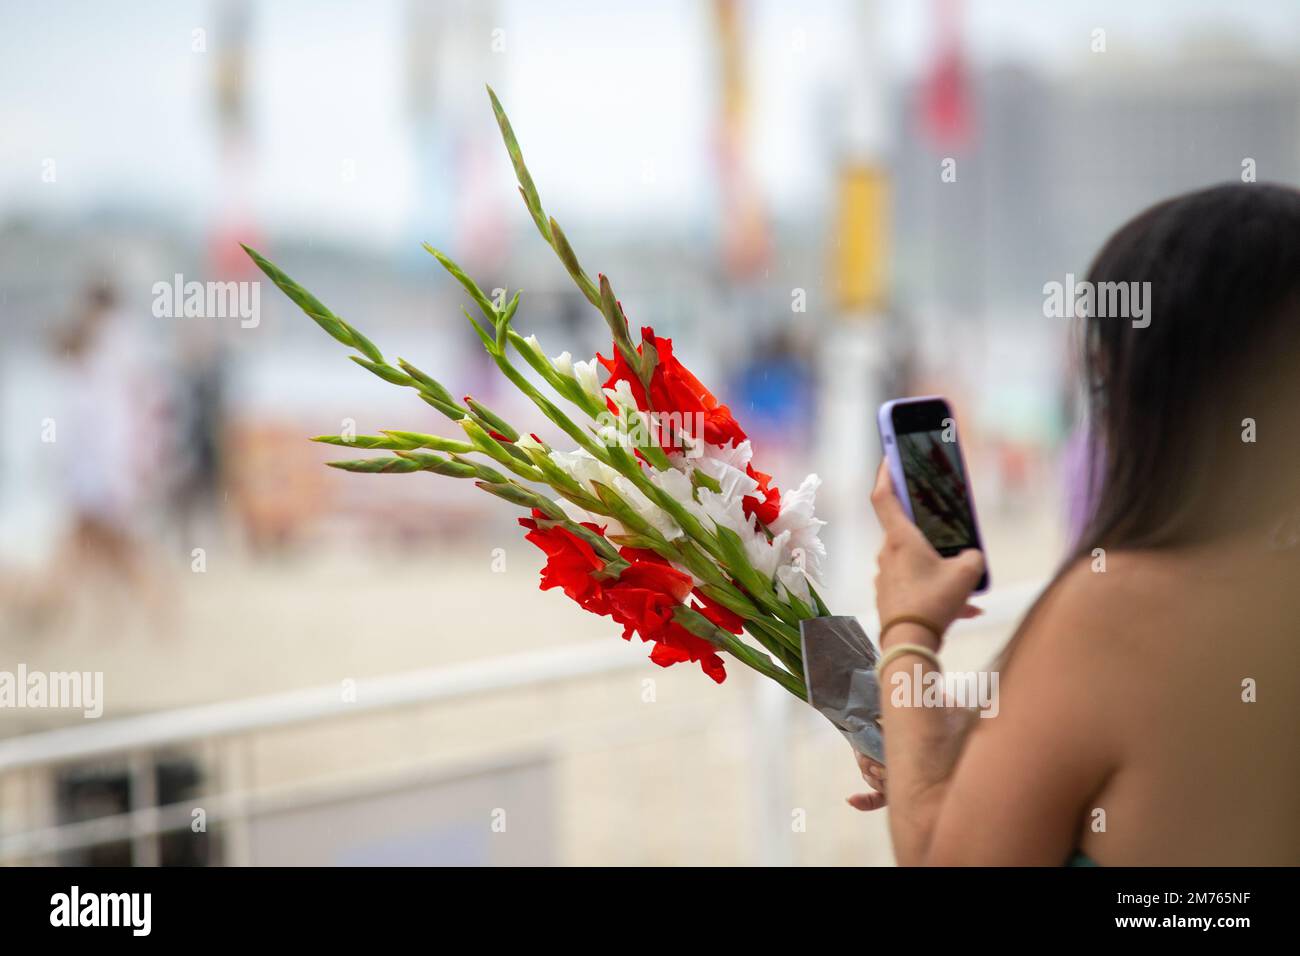 Blumen zu Ehren von iemanja, während einer Party am copacabana Beach. Stockfoto